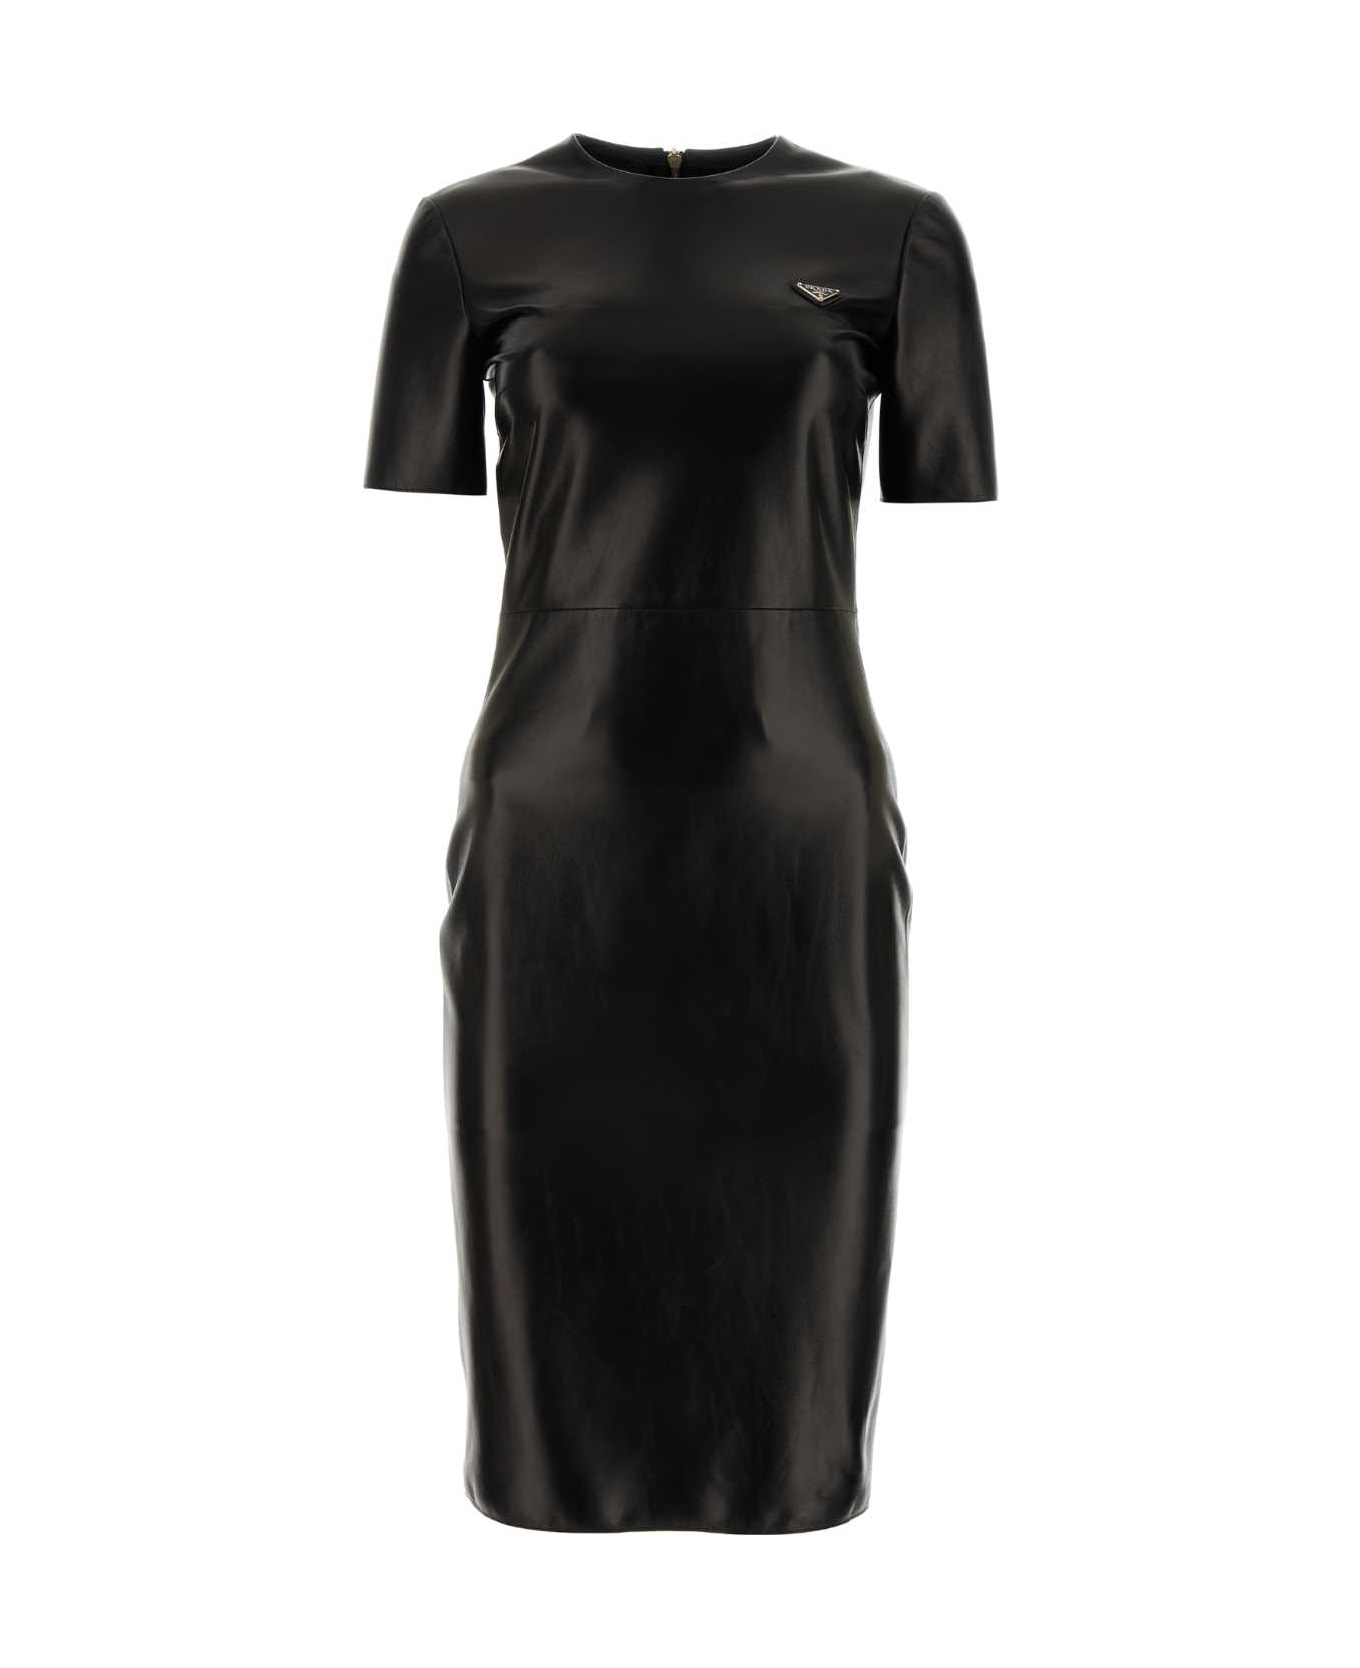 Prada Black Nappa Leather Dress - NERO